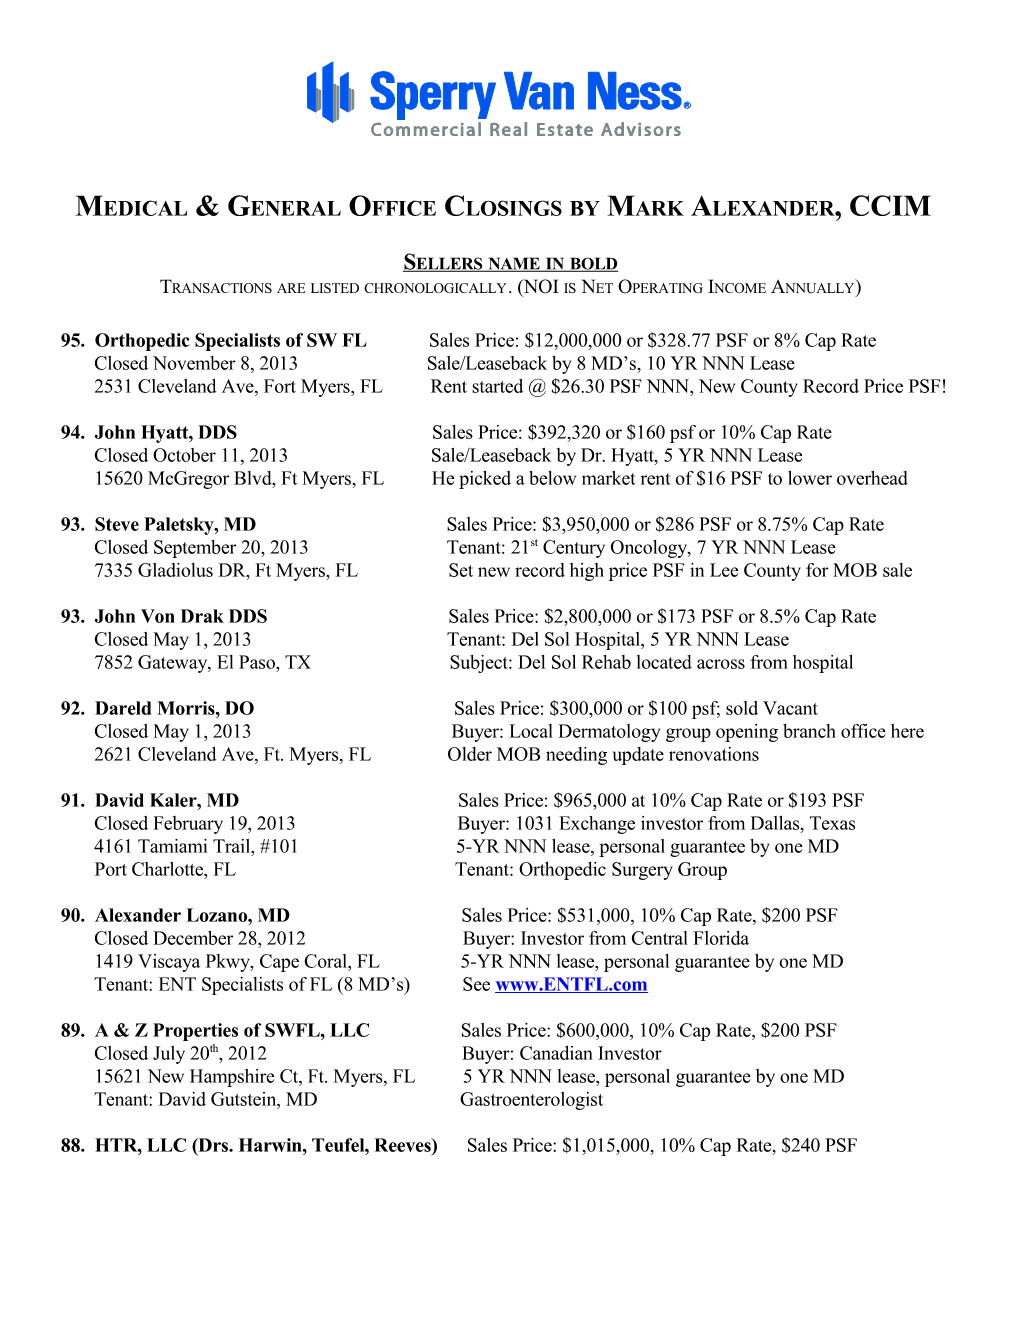 Medical General Officeclosings by Mark Alexander, CCIM